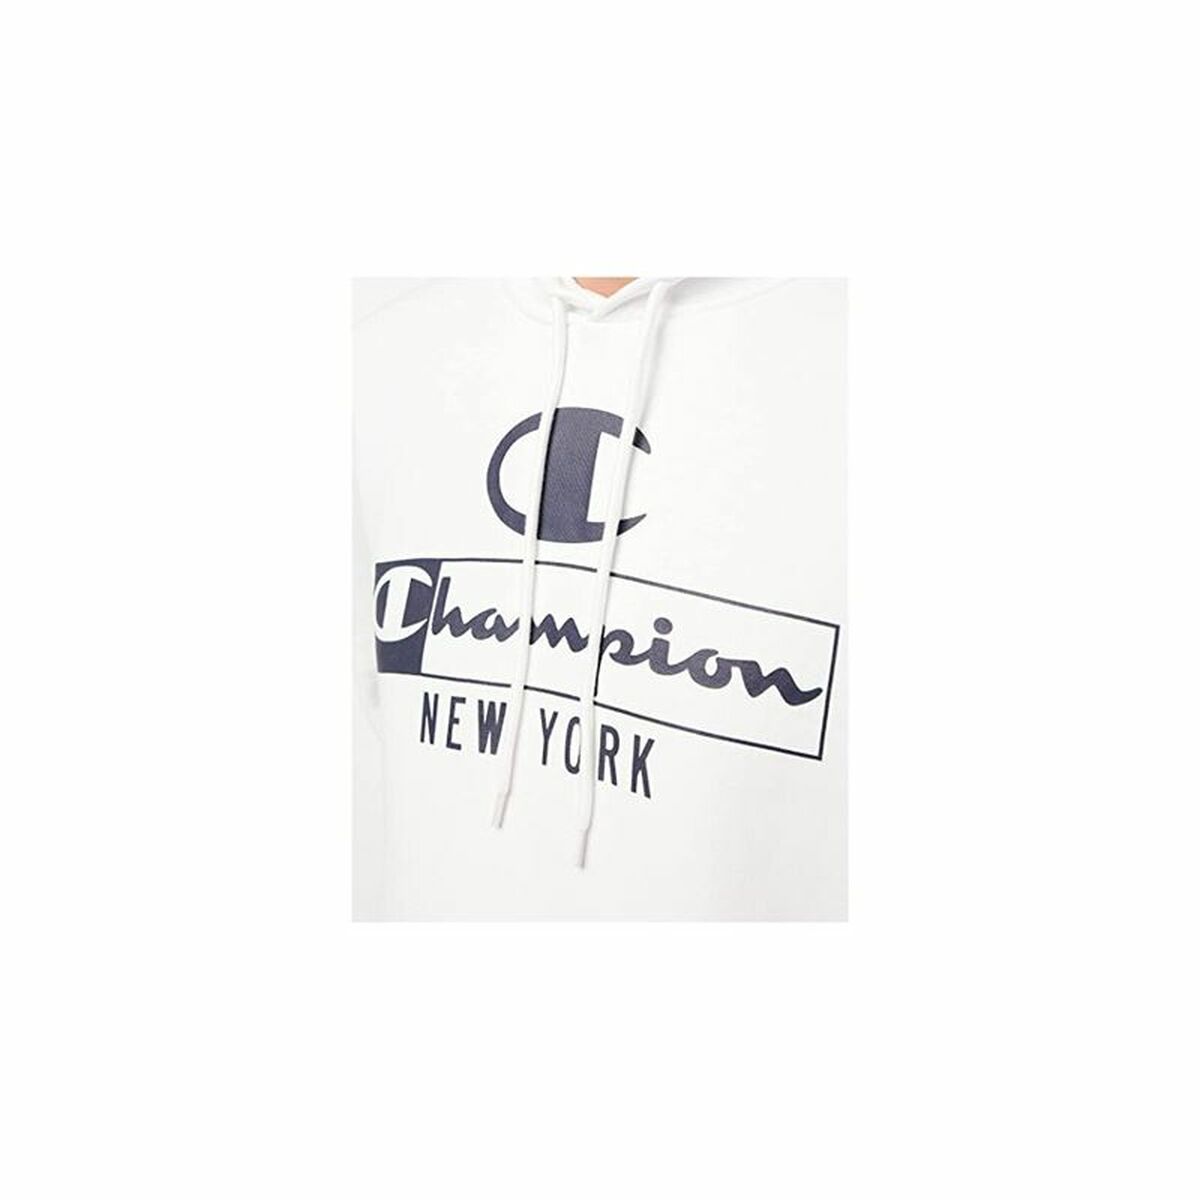 Kaufe Herren Sweater mit Kapuze Champion New York Weiß bei AWK Flagship um € 52.00